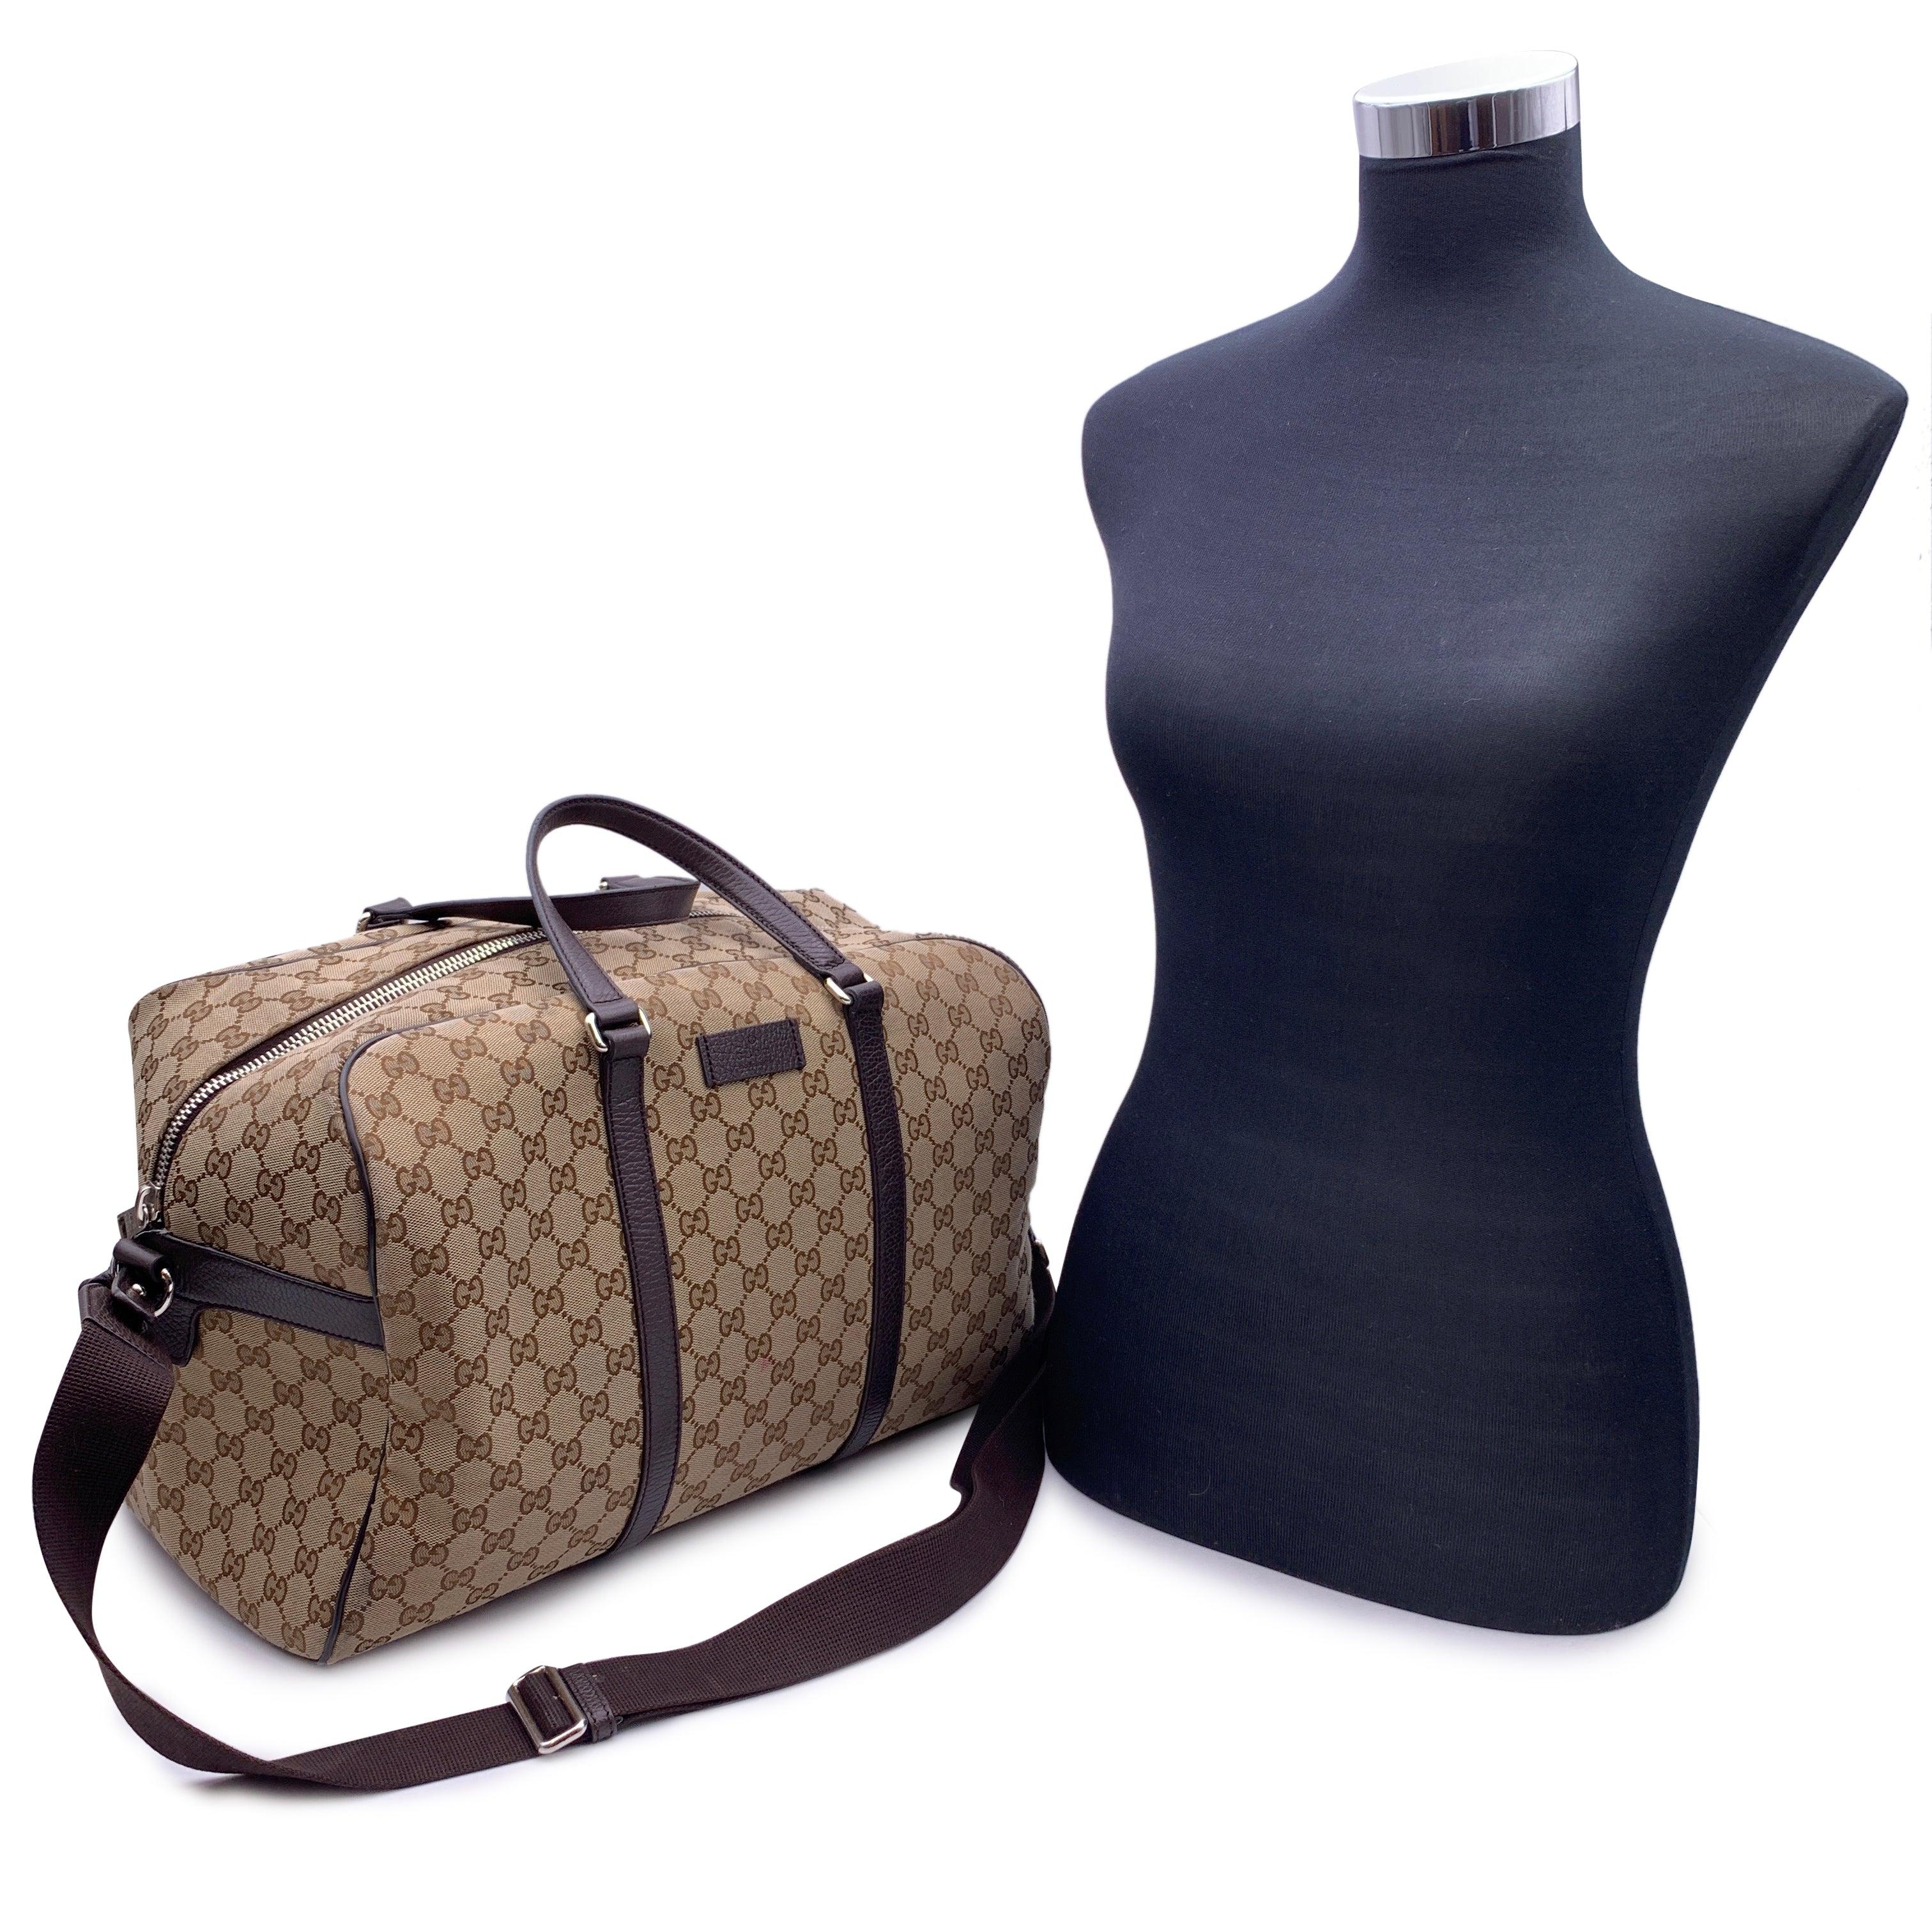 Schöne Seesack-Reisetasche von Gucci. Sie ist aus beigem Monogram-Camvas gefertigt und verfügt über ein Gucci Namensschild auf der Vorderseite, doppelte Henkel, einen oberen Reißverschluss und ein Stofffutter. 1 seitliches Reißverschlussfach innen.